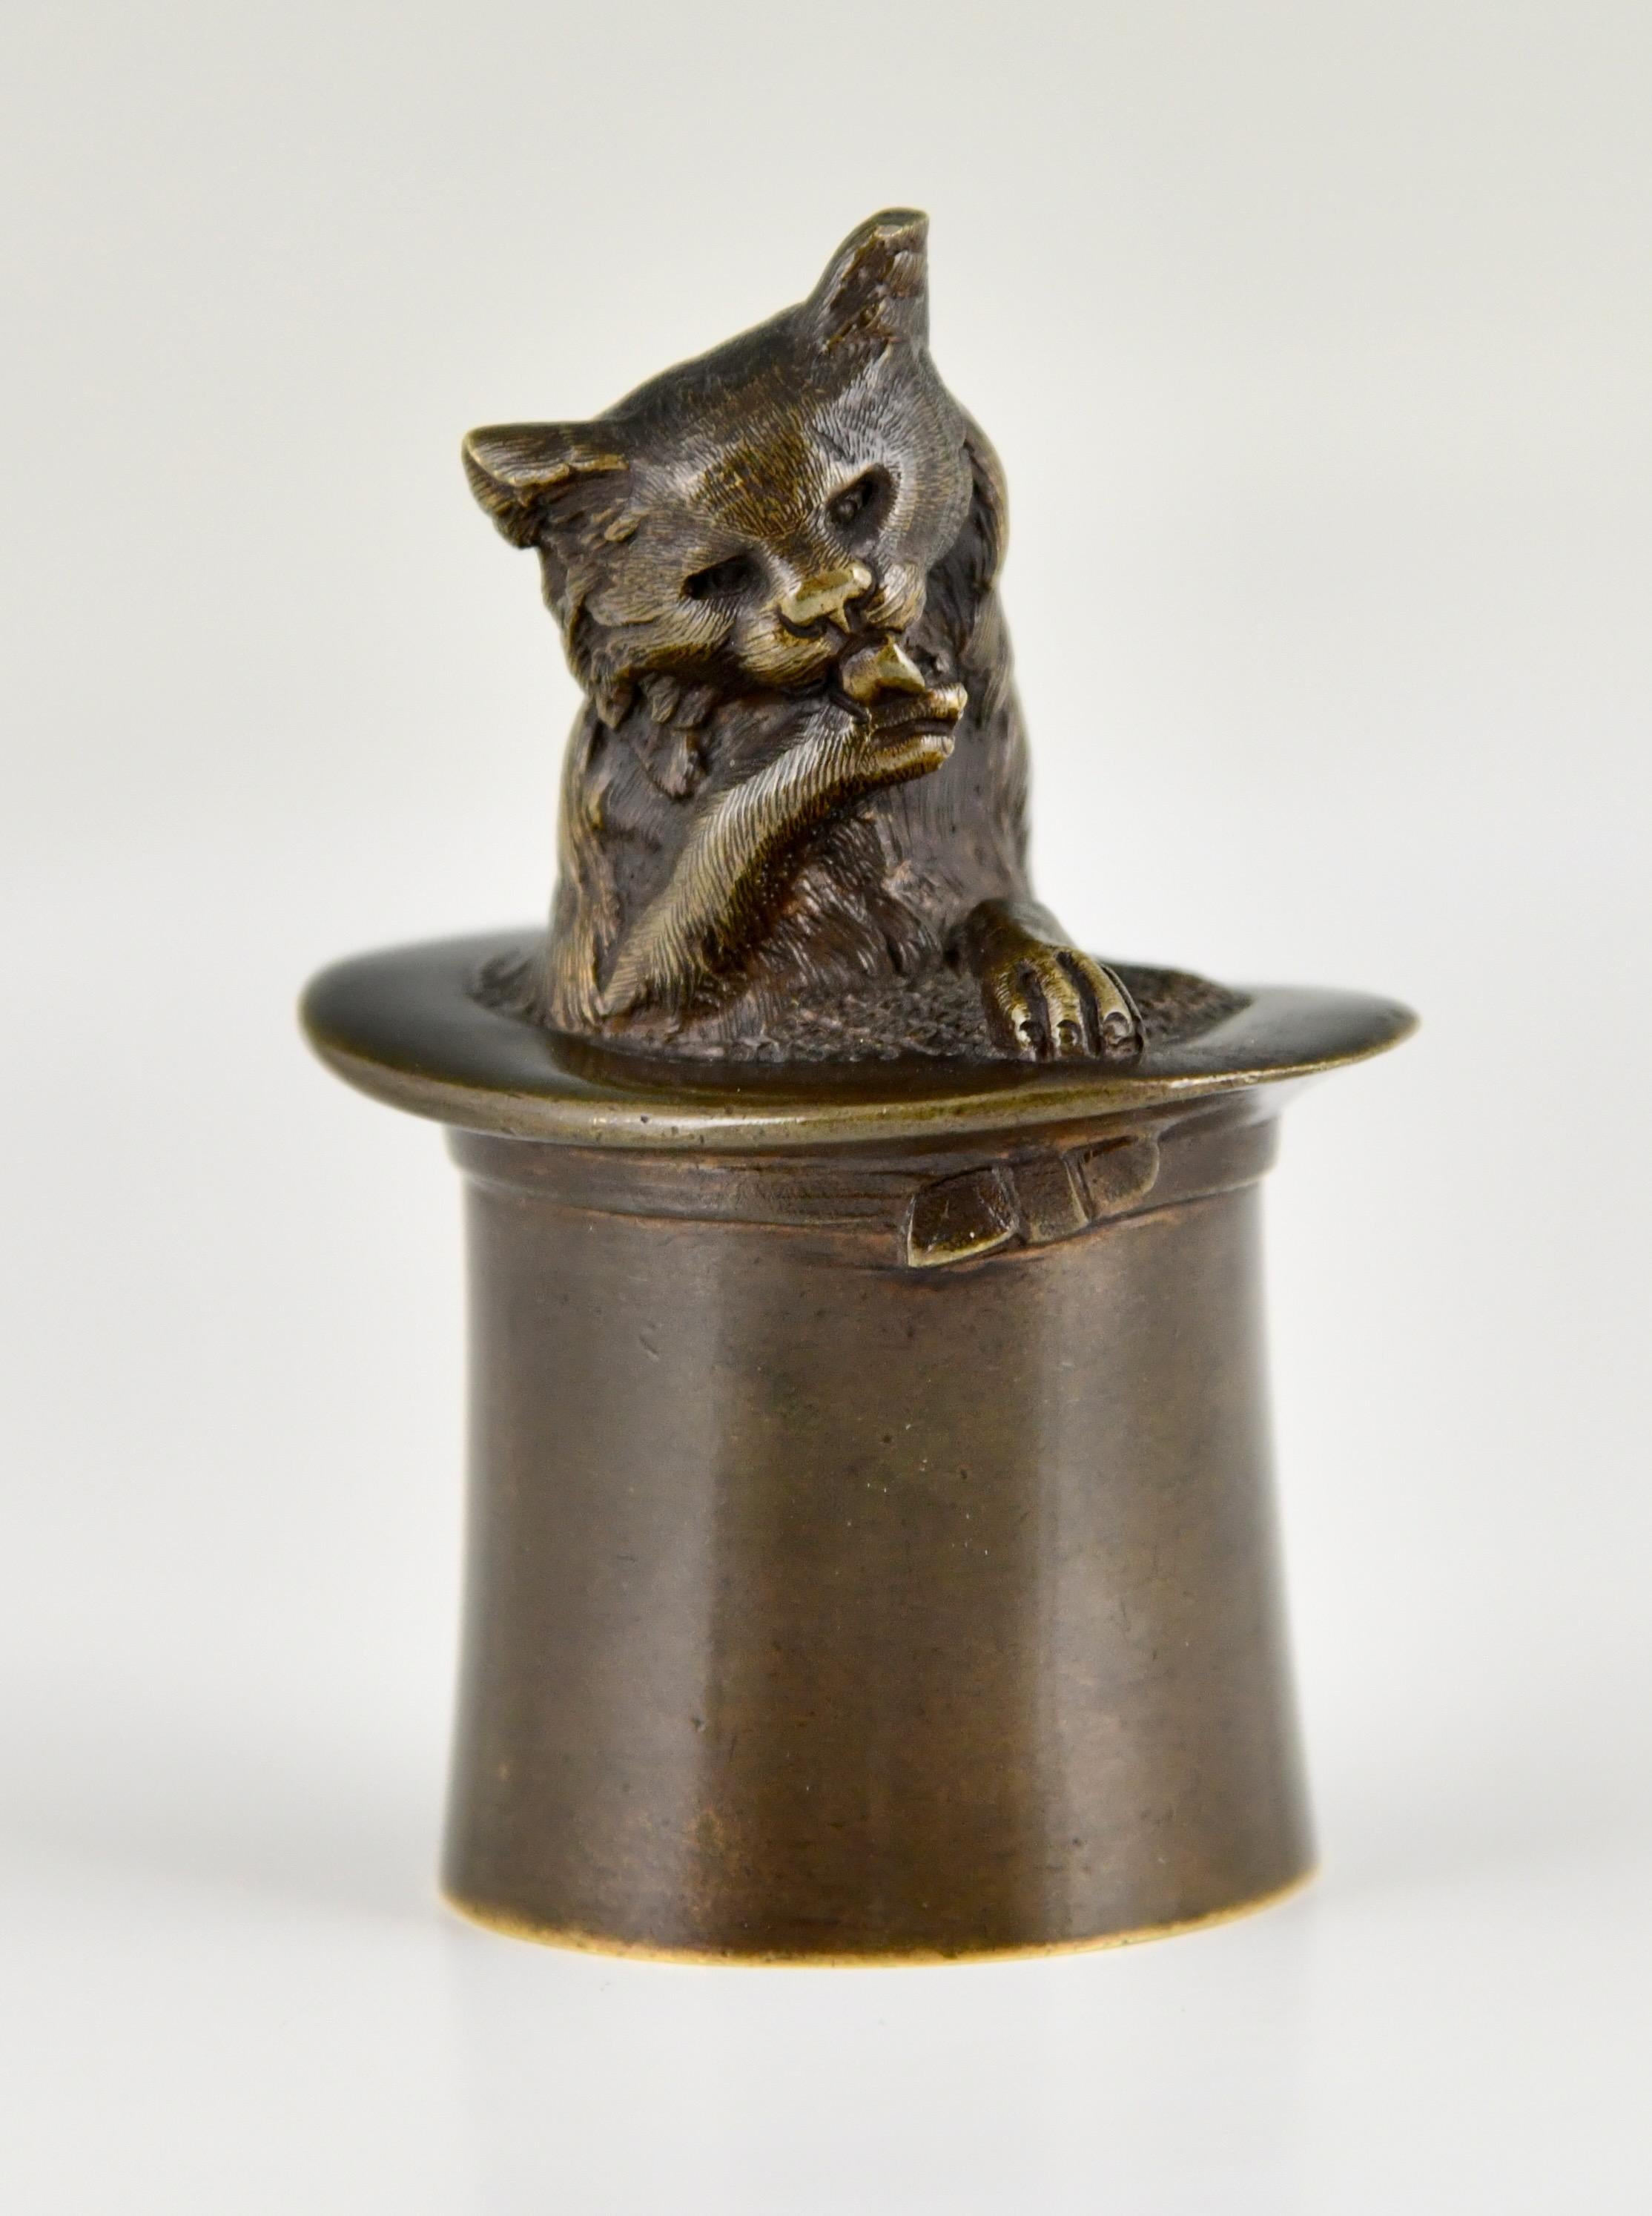 Antike Bronze Tischglocke Katze in einem Zylinder.
Frankreich 1880-1900